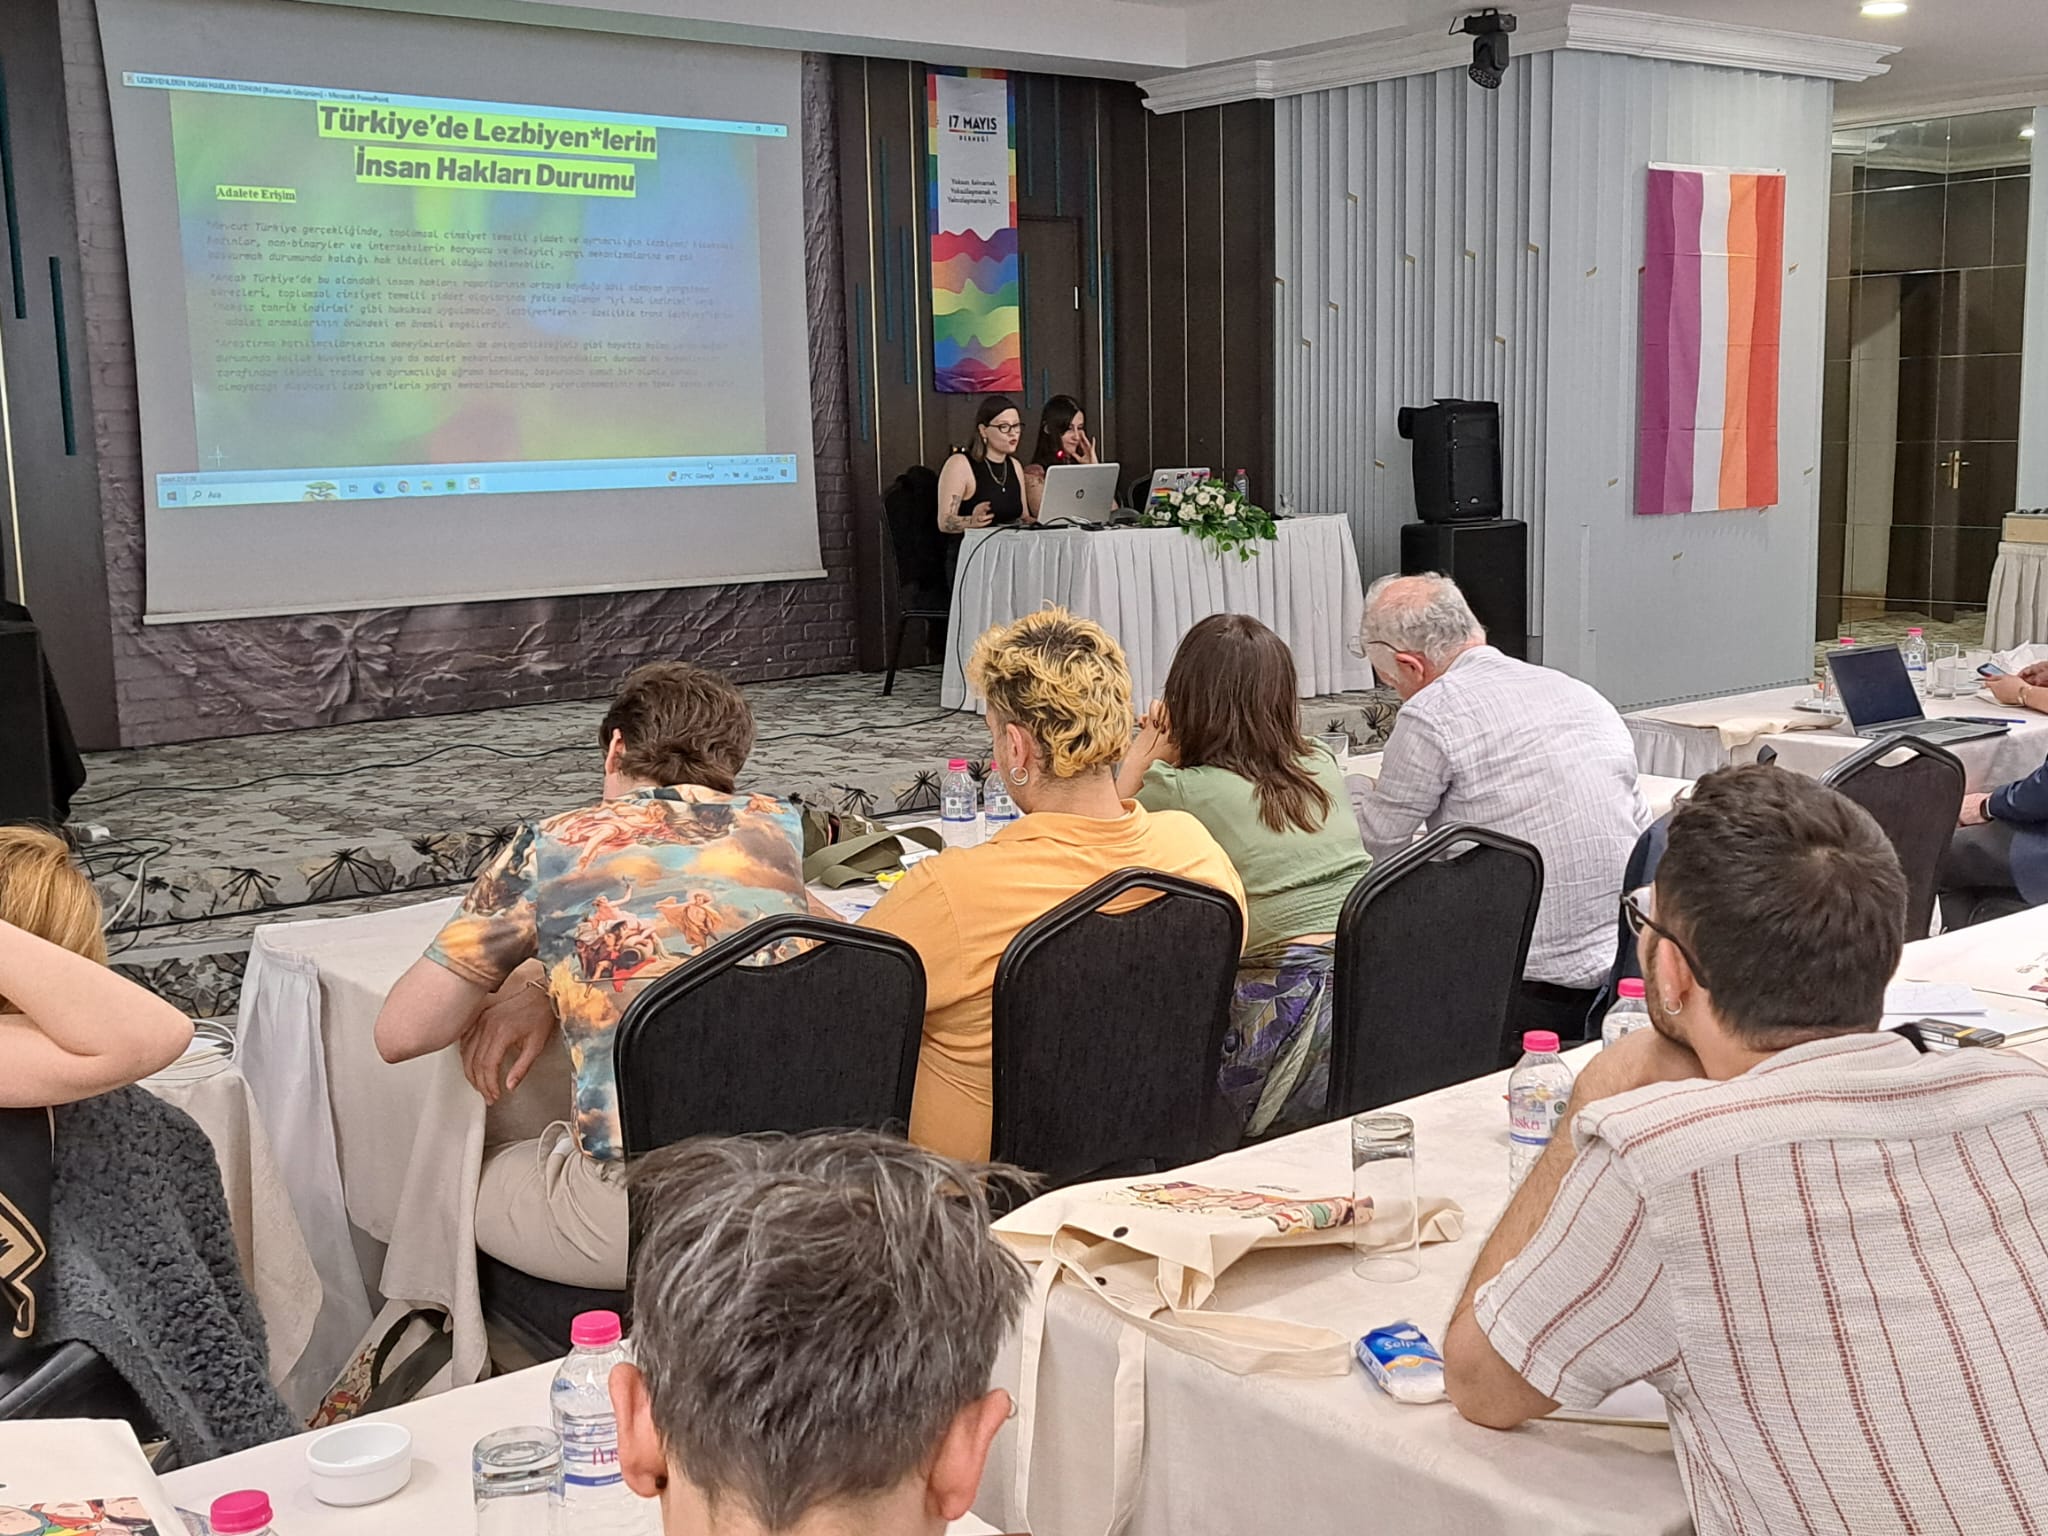 26 Nisan Lezbiyen Görünürlük gününde “Lezbiyen*lerin İnsan Hakları Raporu” açıklandı | Kaos GL - LGBTİ+ Haber Portalı